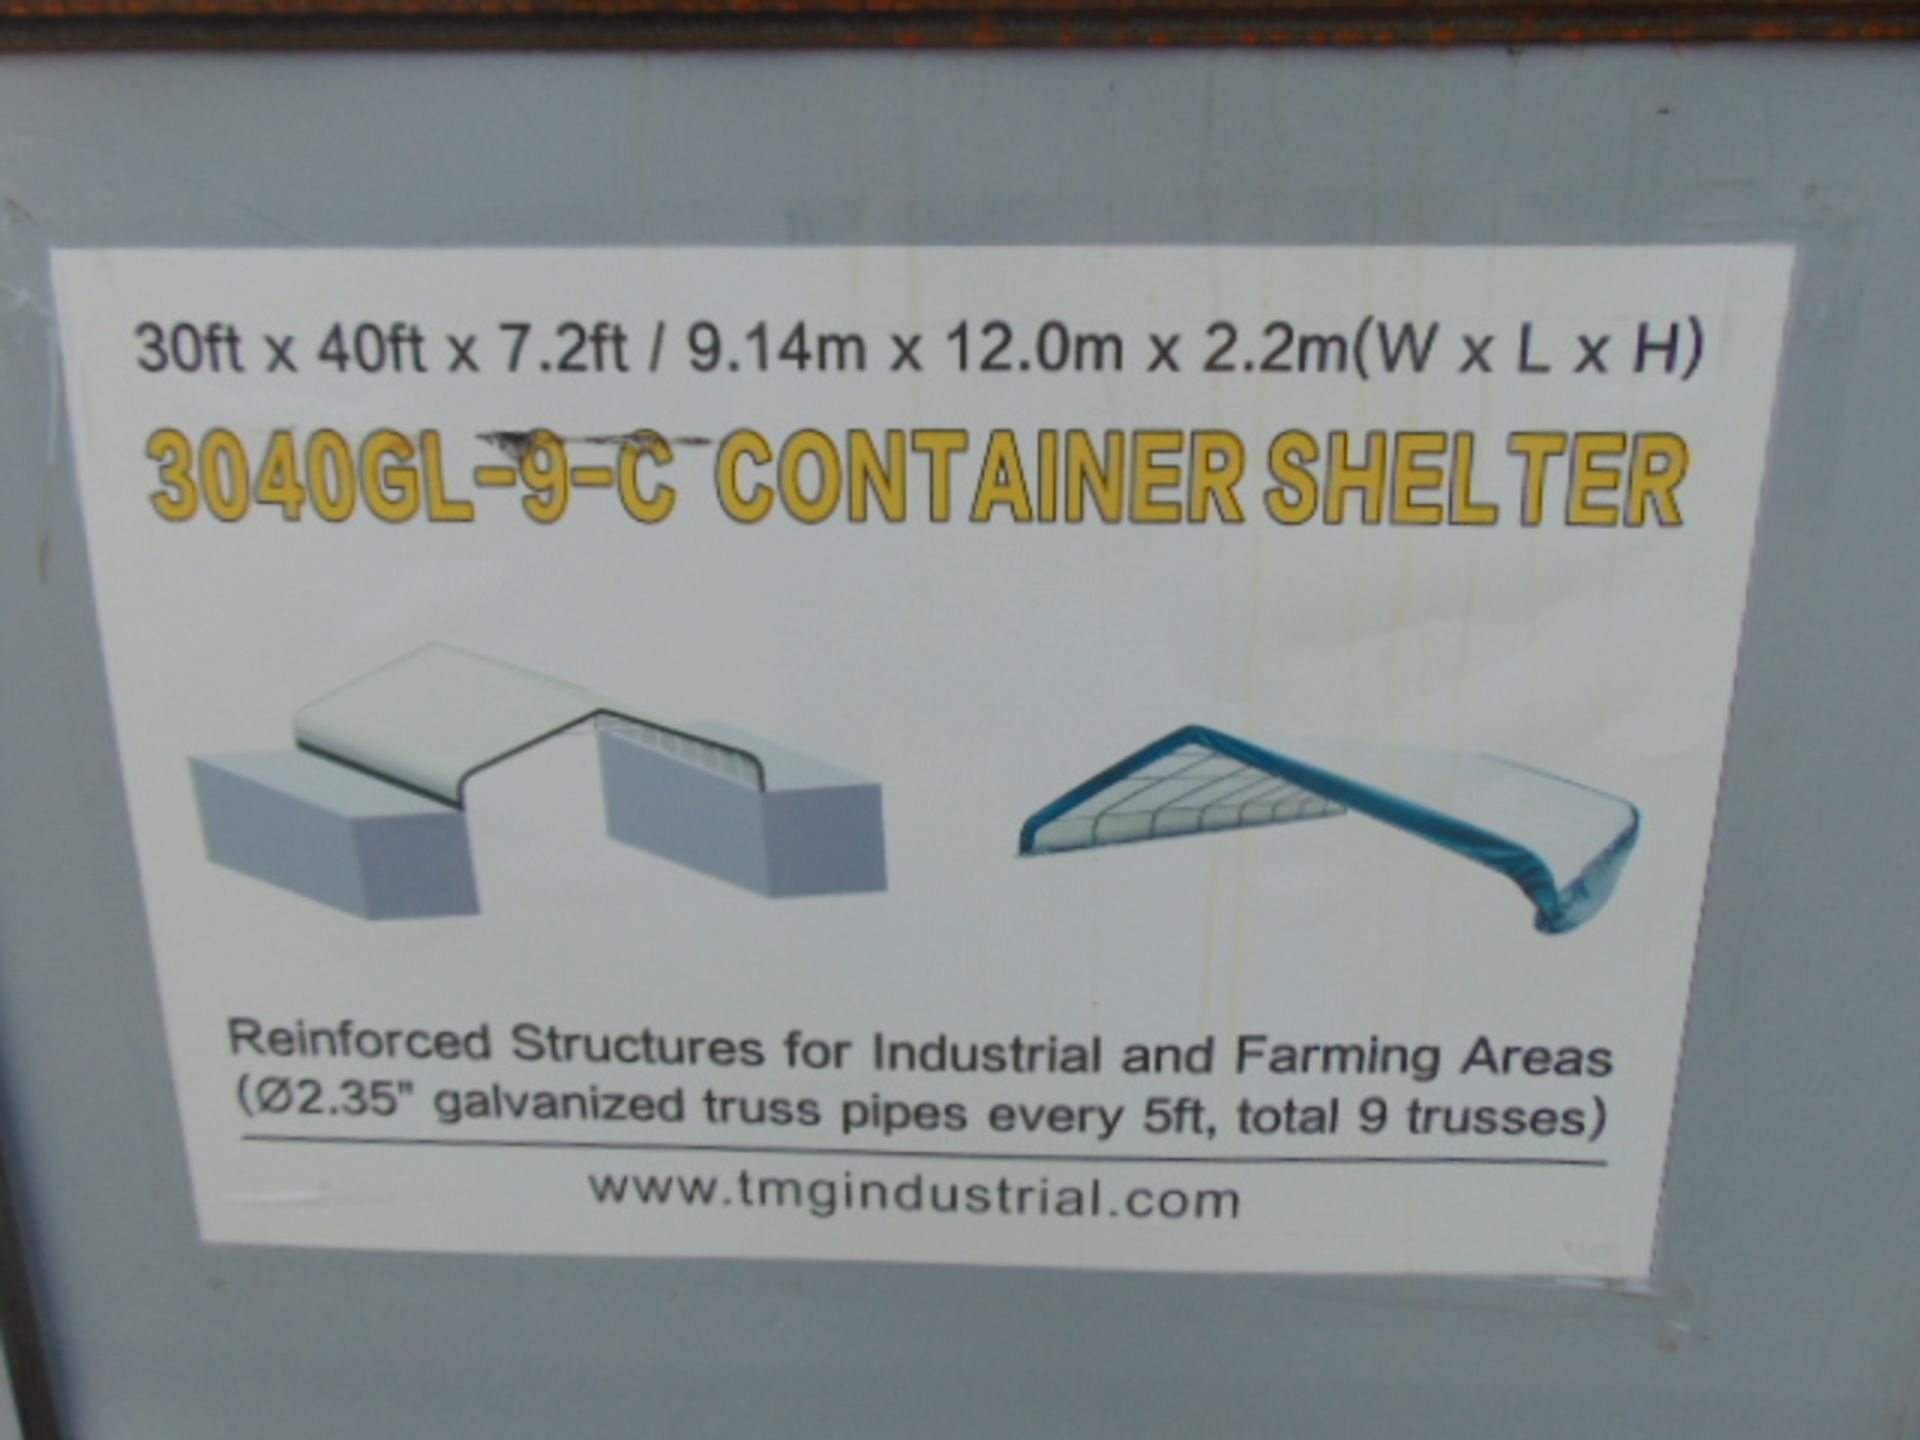 Container Shelter 30'W x 40'L x 7.2' H P/No 3040GL-9-C - Image 2 of 6